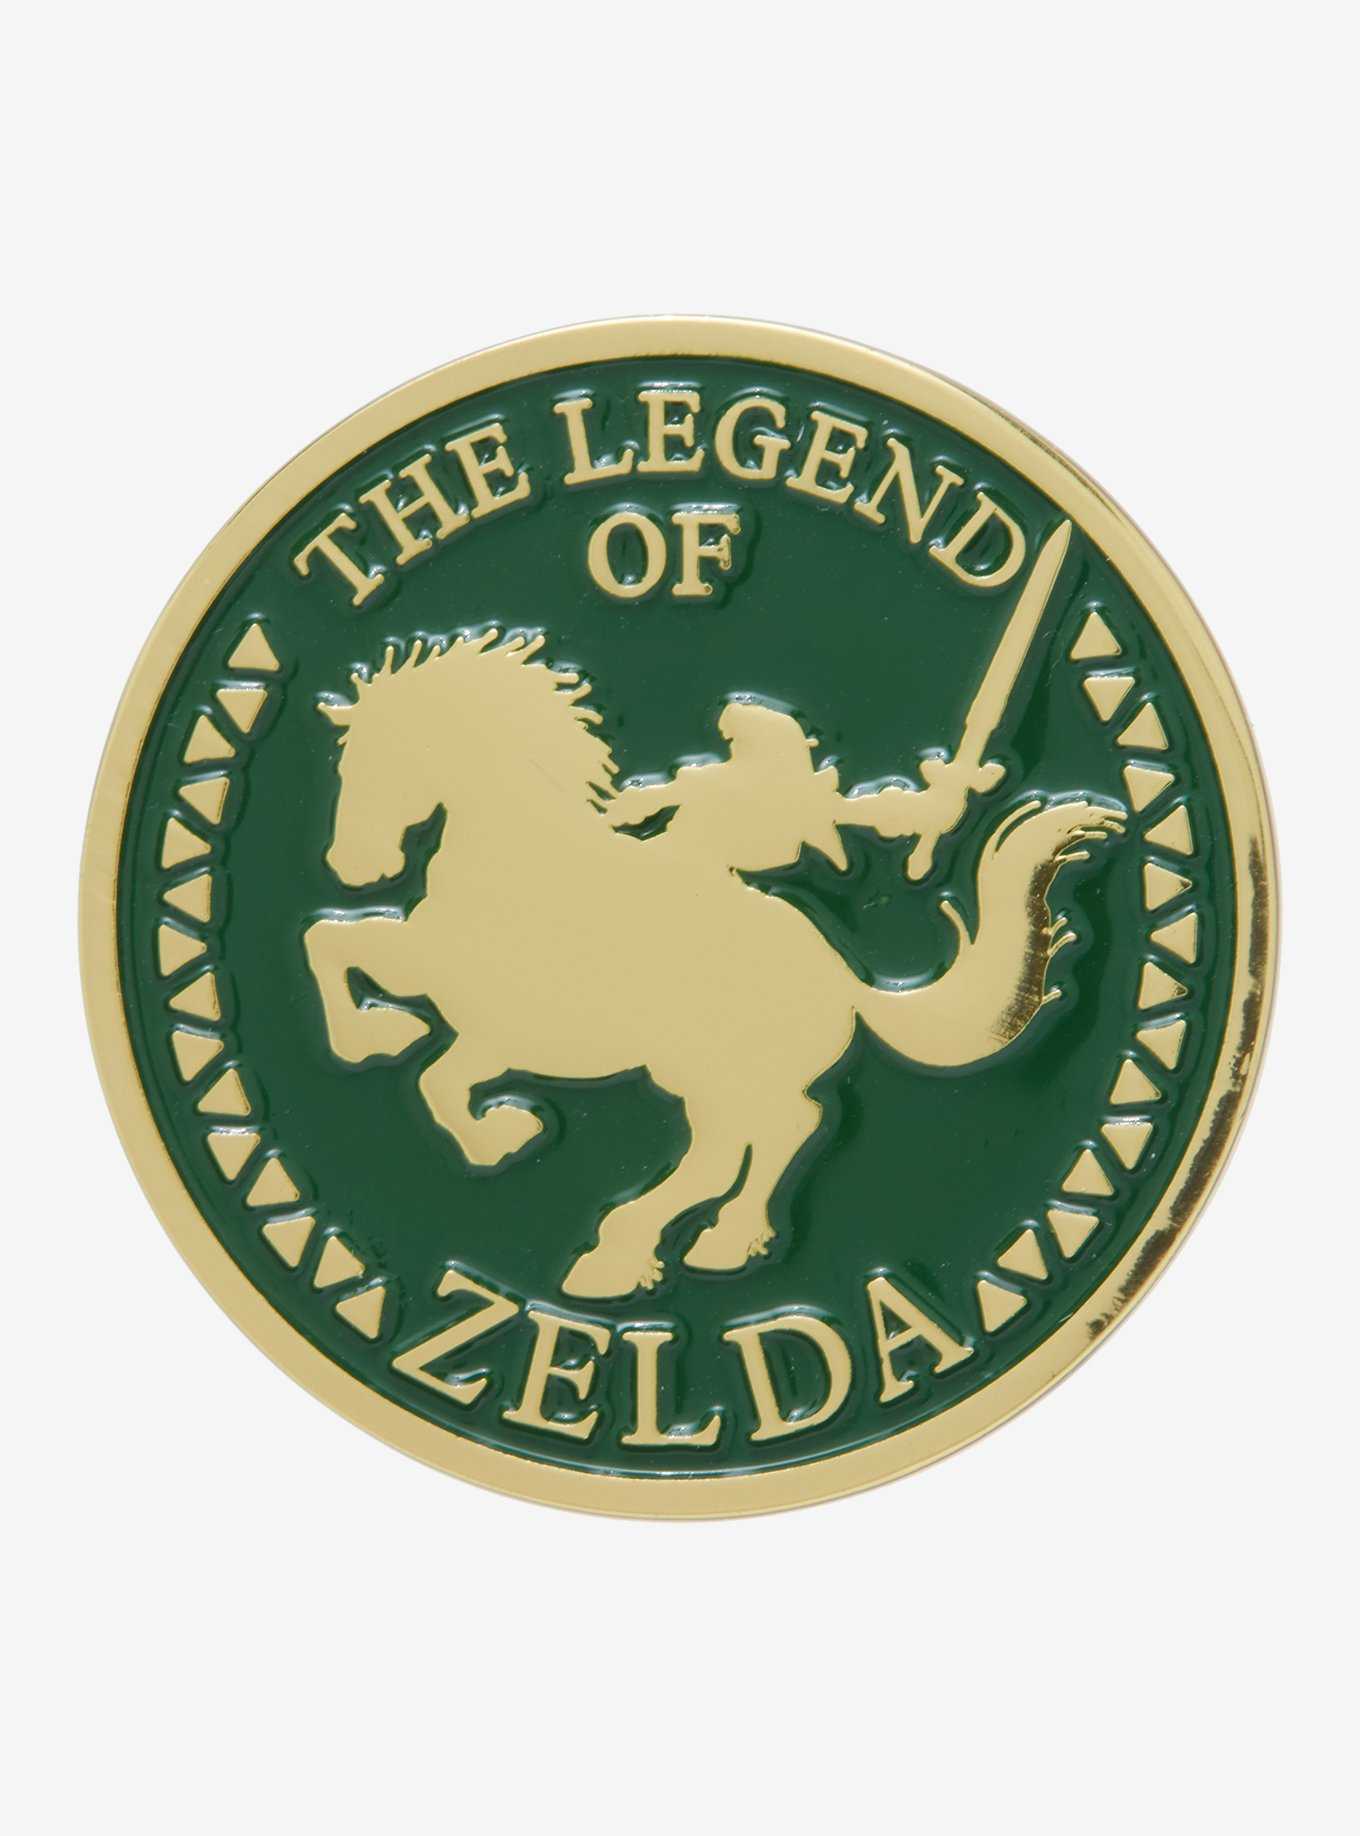 Nintendo The Legend of Zelda Epona & Link Enamel Pin - BoxLunch Exclusive, , hi-res